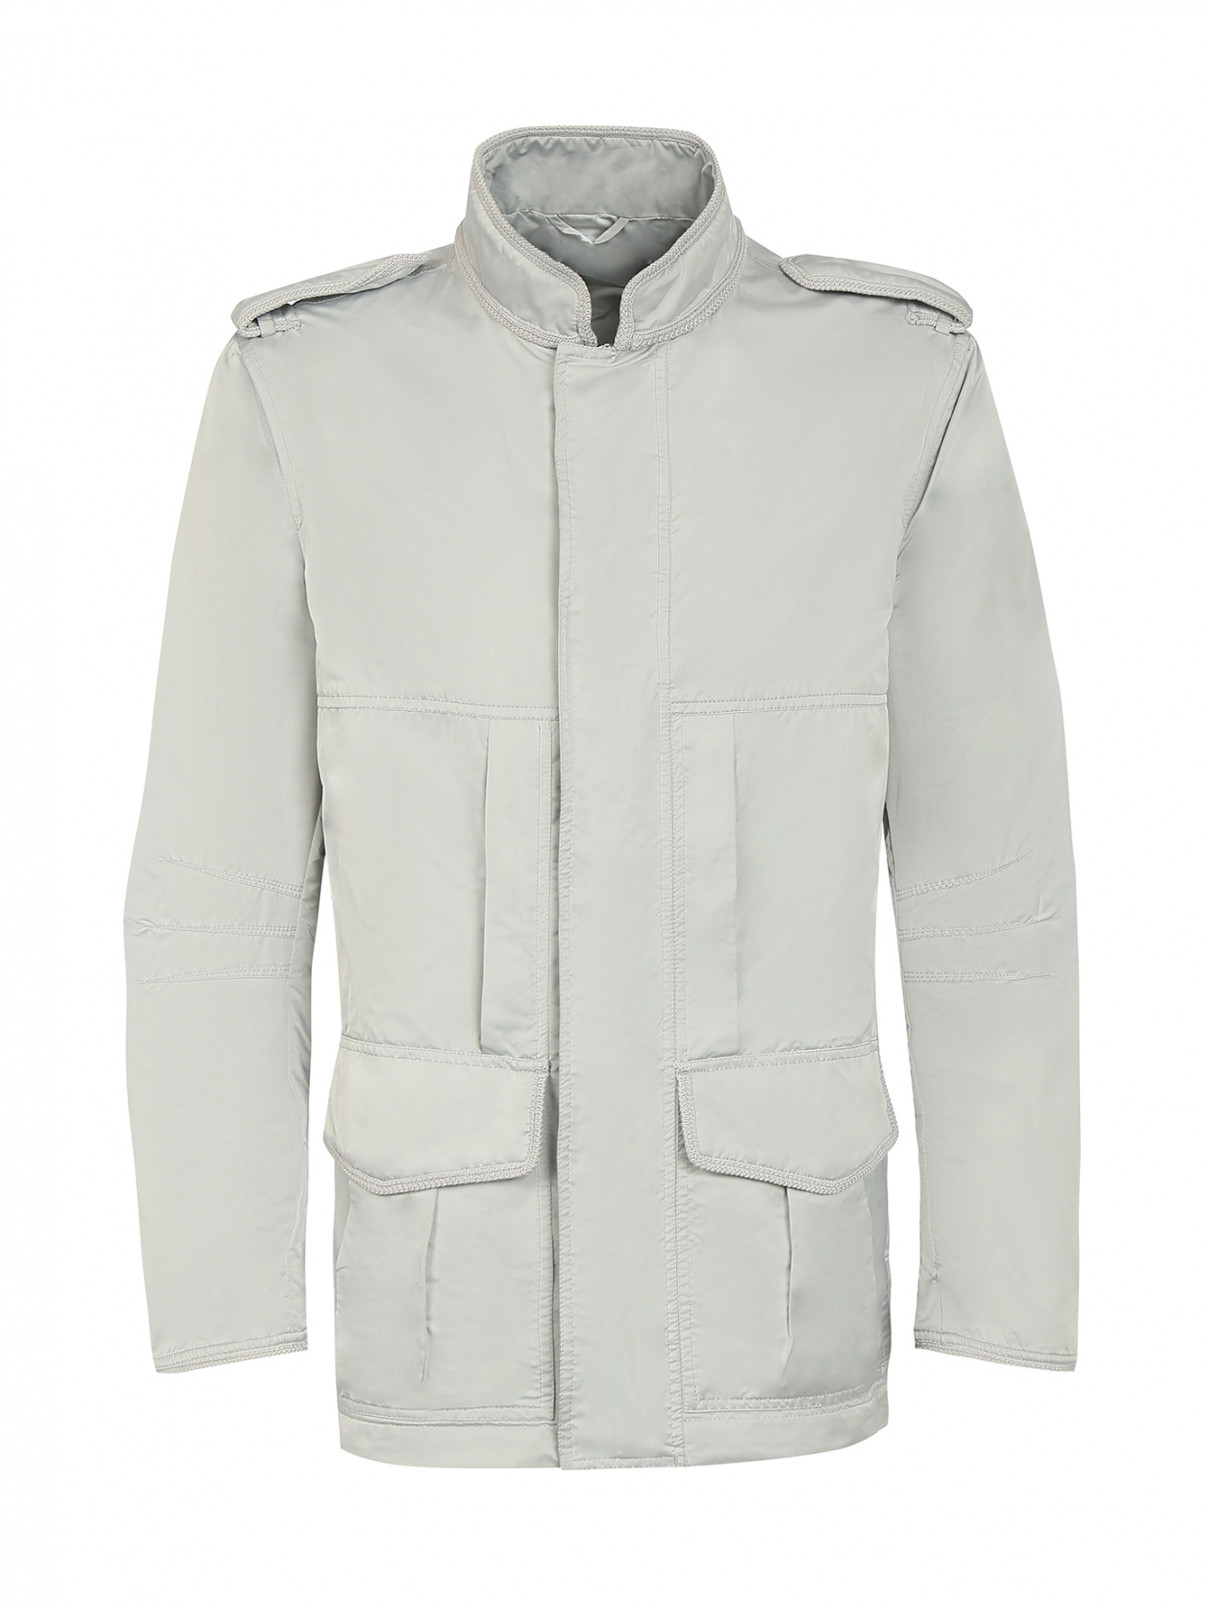 Куртка на молнии и накладными карманами Ermanno Scervino  –  Общий вид  – Цвет:  Серый